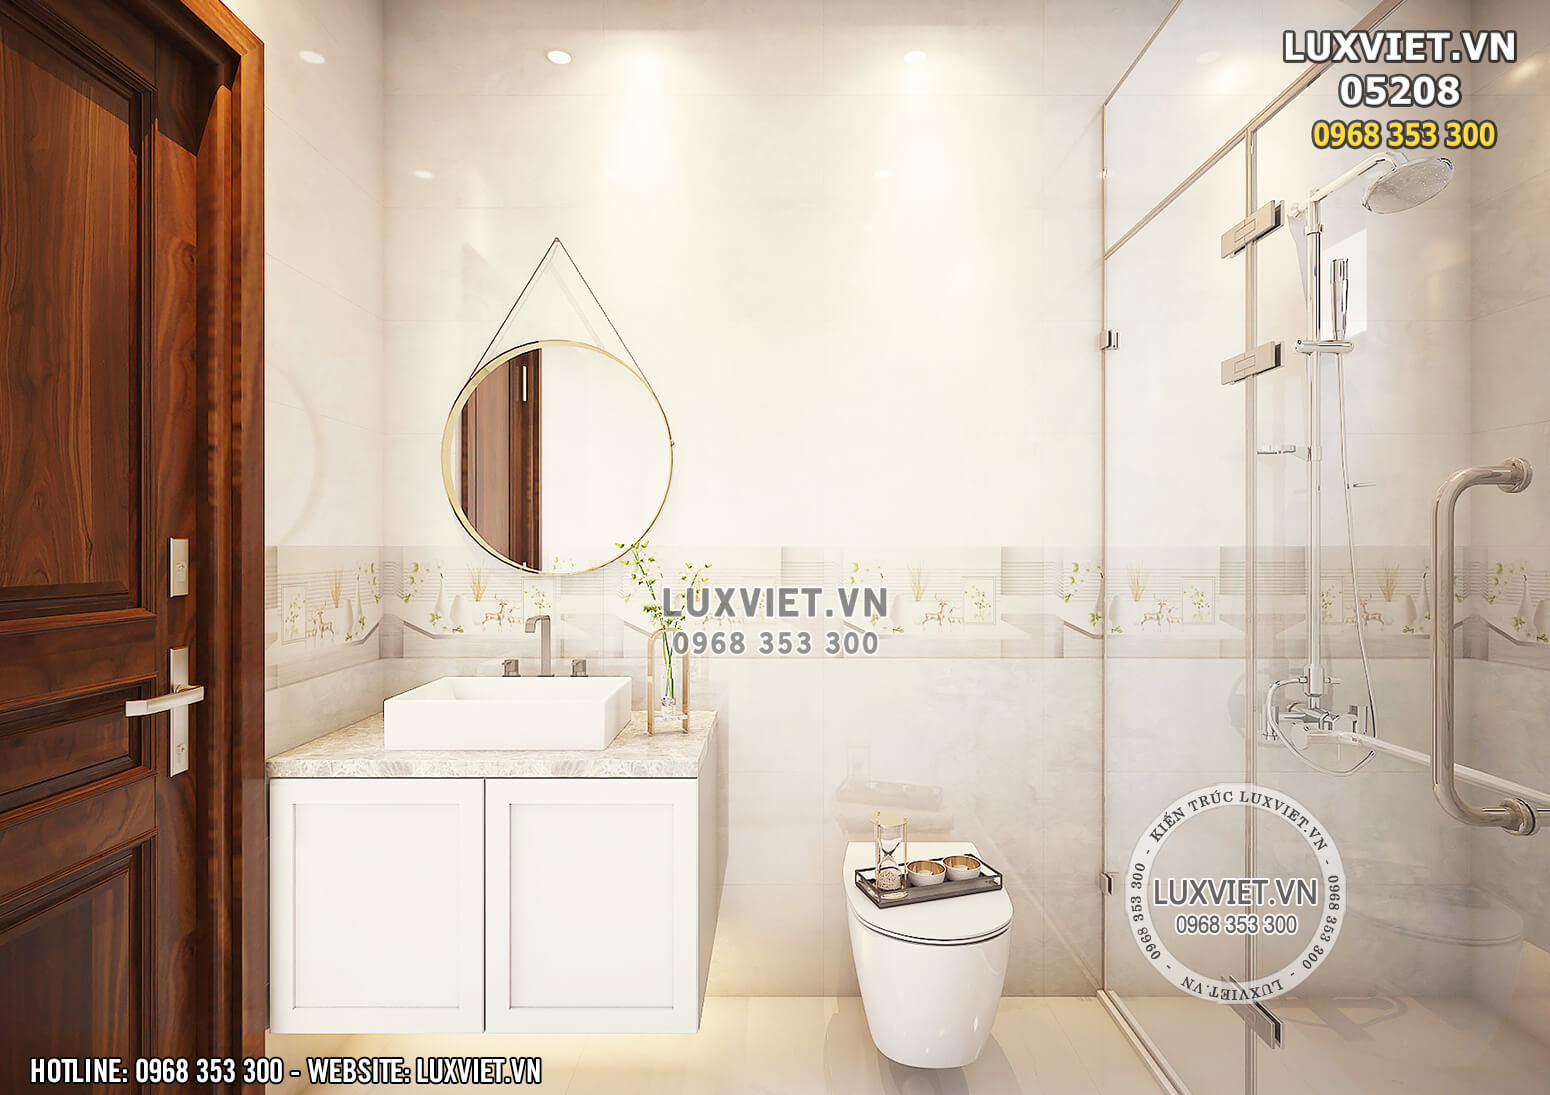 Hình ảnh: Thiết kế phòng tắm thoáng đãng và đương đại - LV 05208